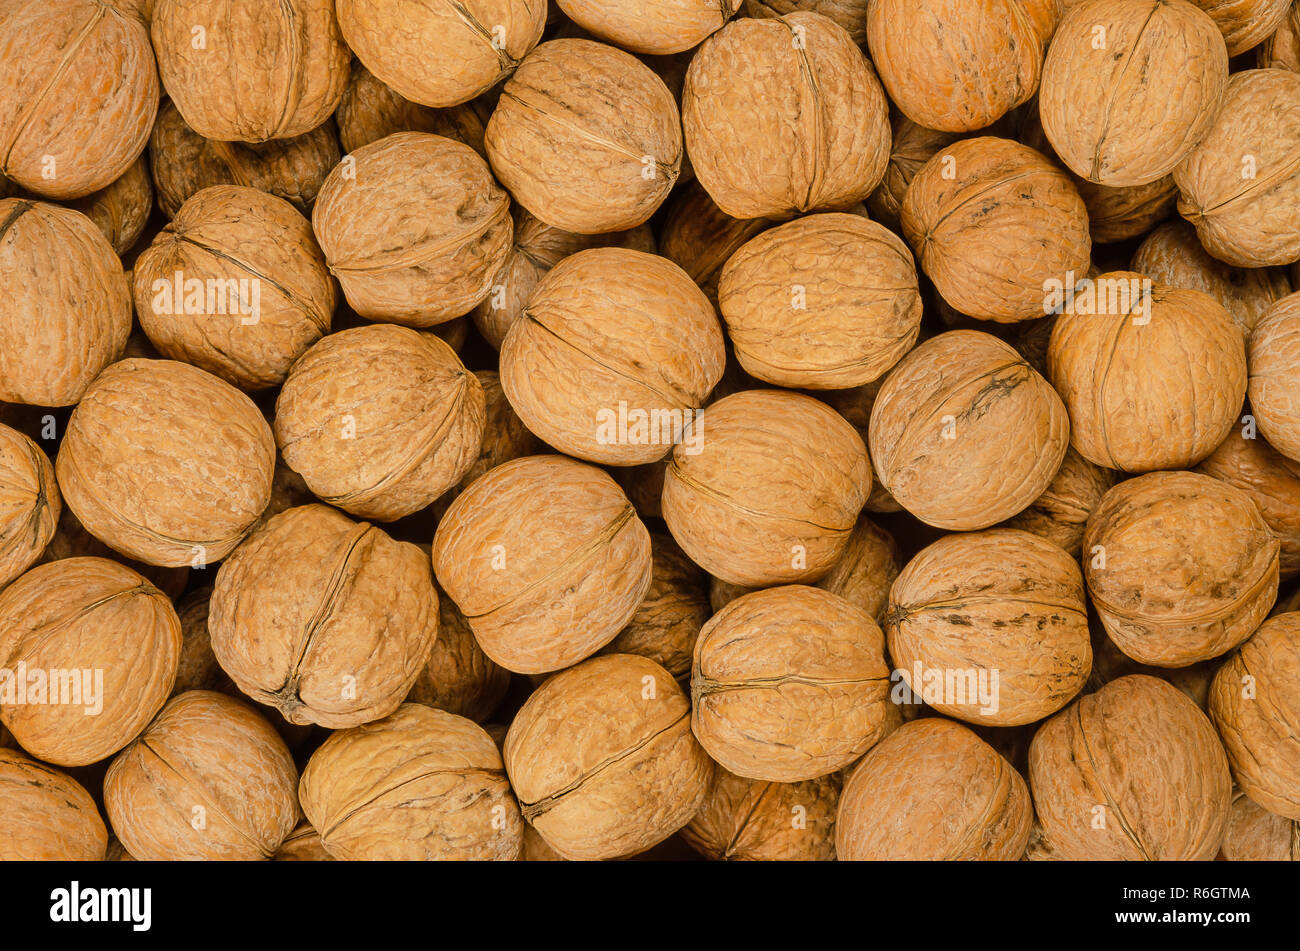 Arrière-plan de noix close up. Les graines non décortiquées du Noyer commun Juglans regia. Pile de fruits entiers avec des coquillages, utilisés comme collation. Banque D'Images